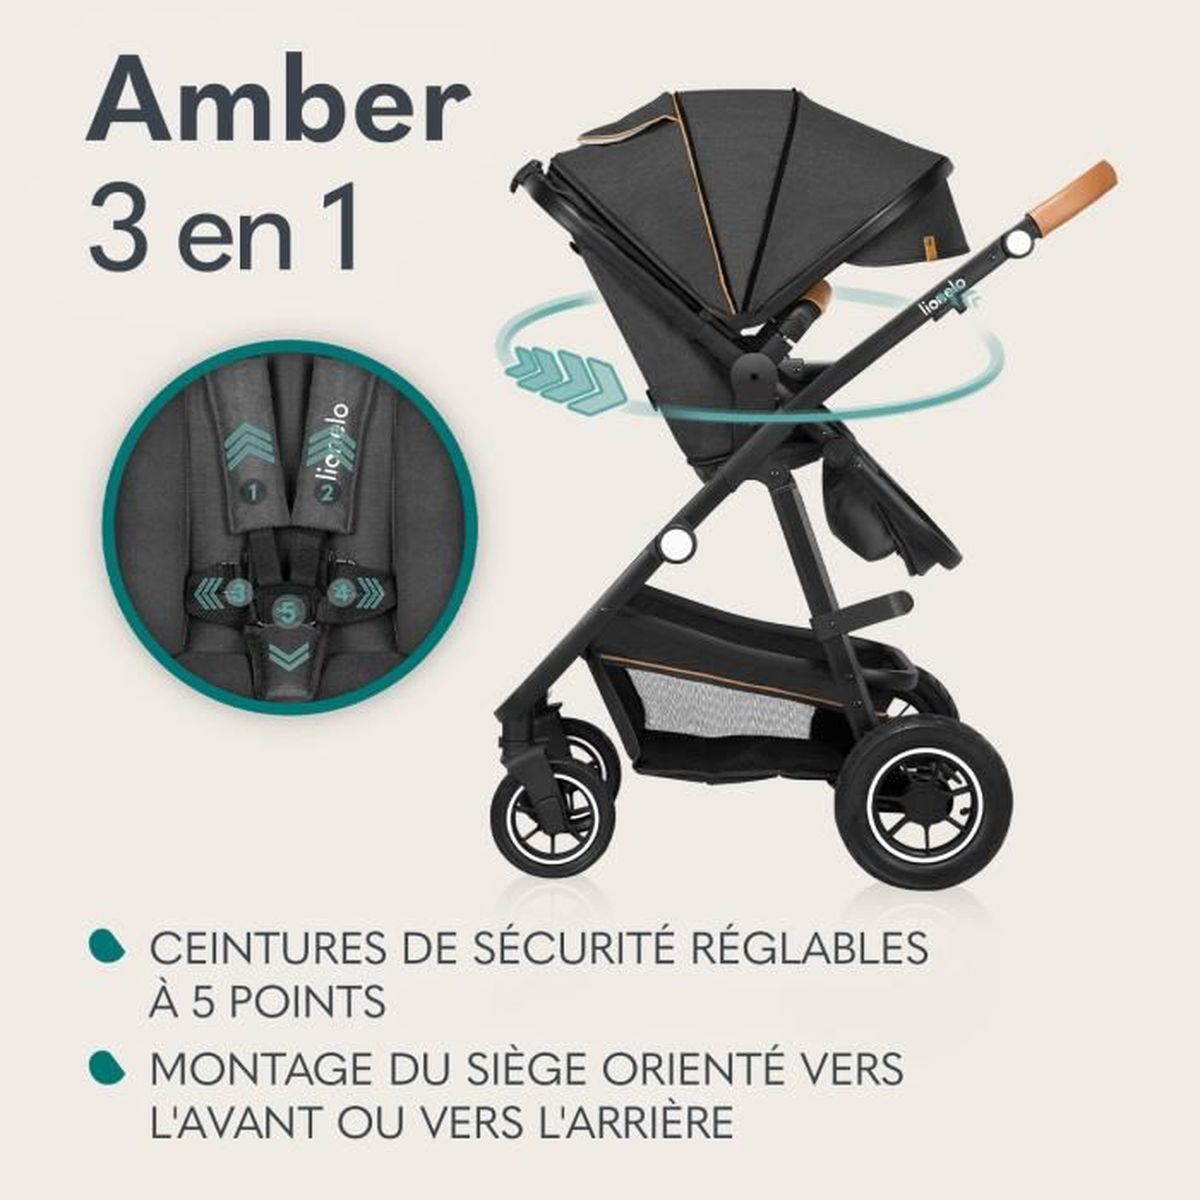 Bébé Confort Amber Plus - DIGNE DE BEBE Mobile